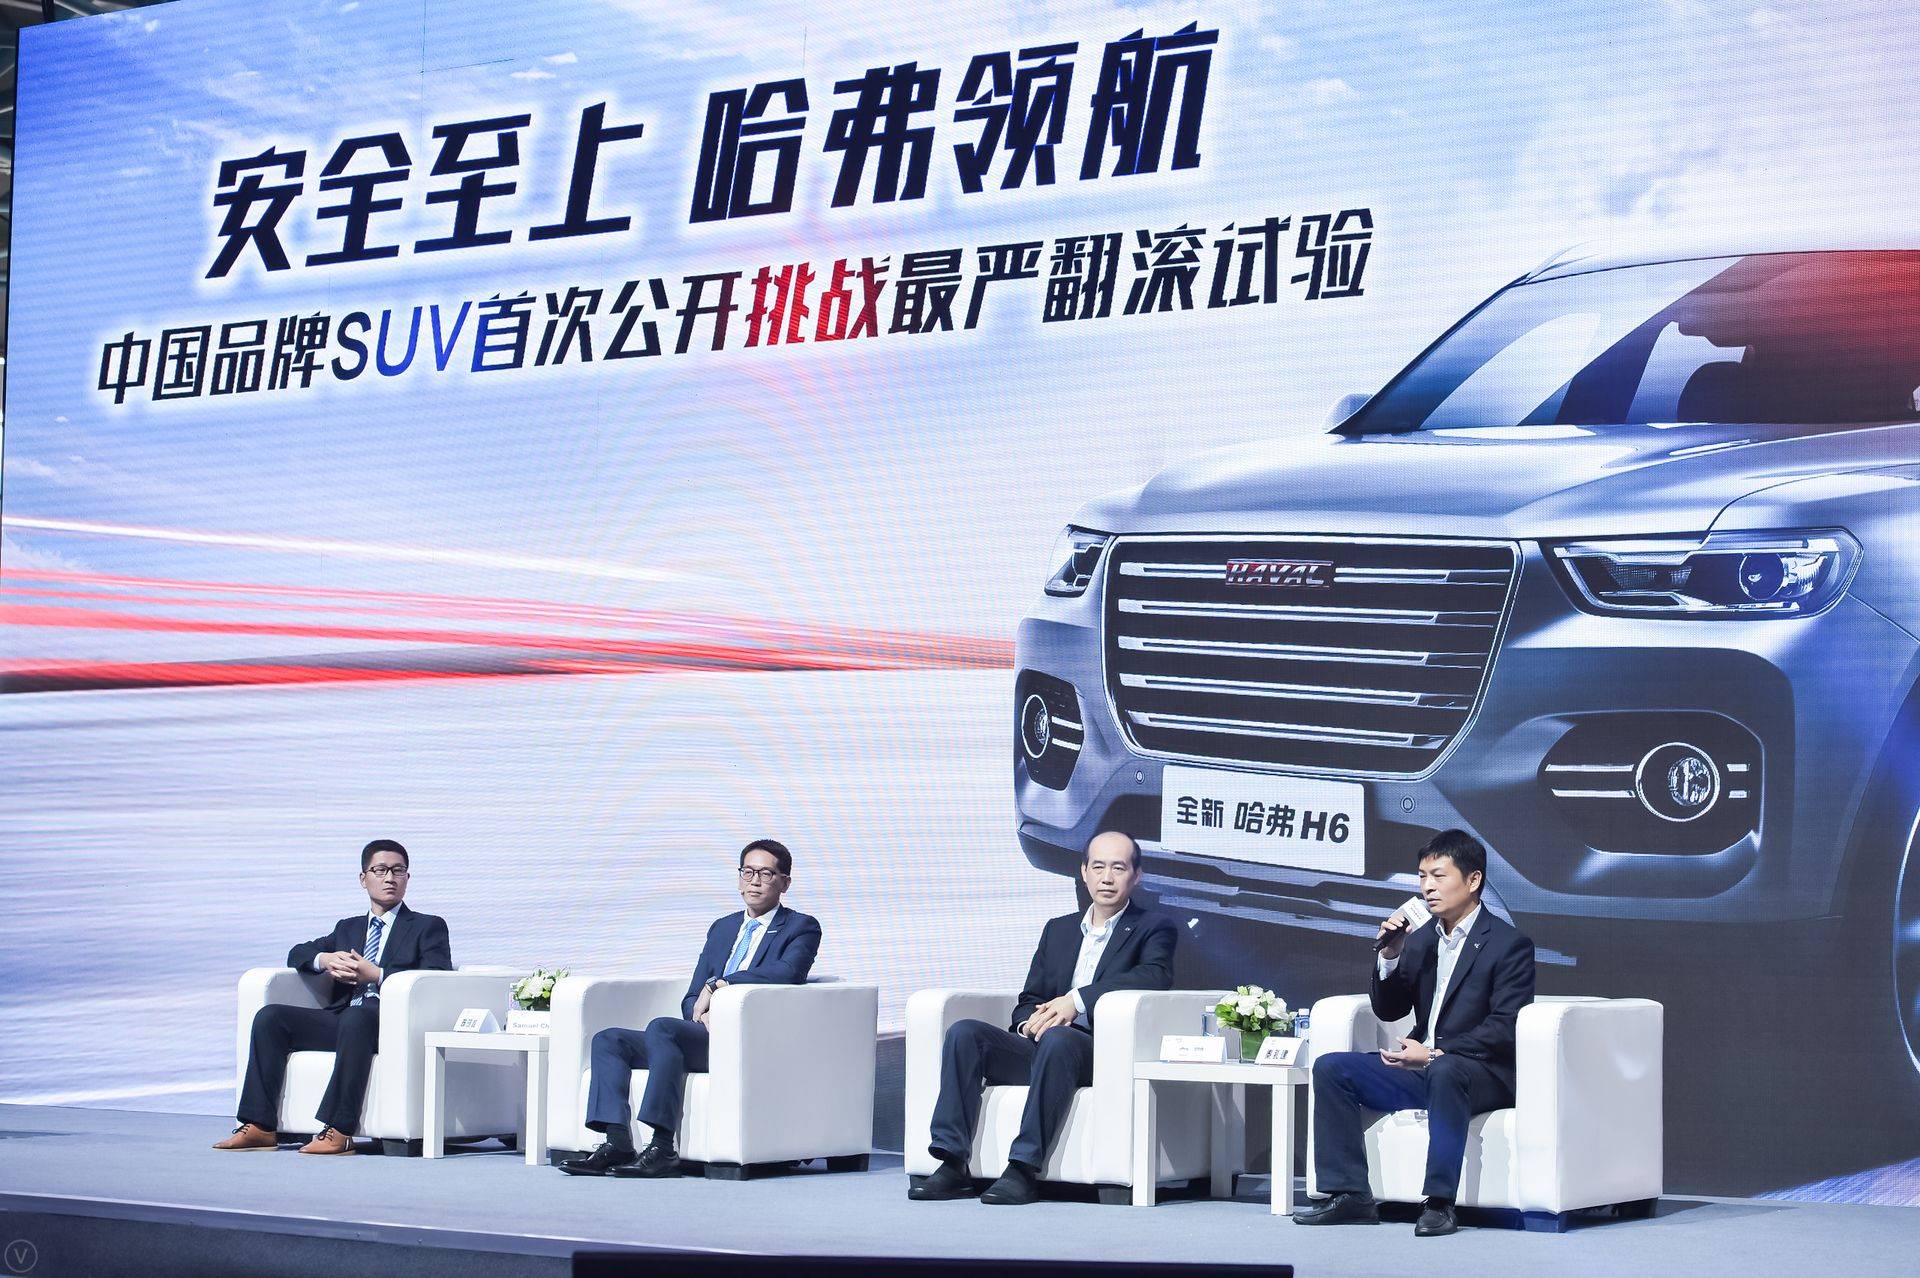 中国品牌SUV首次公开挑战最严翻滚试验-沙龙研讨会.jpg